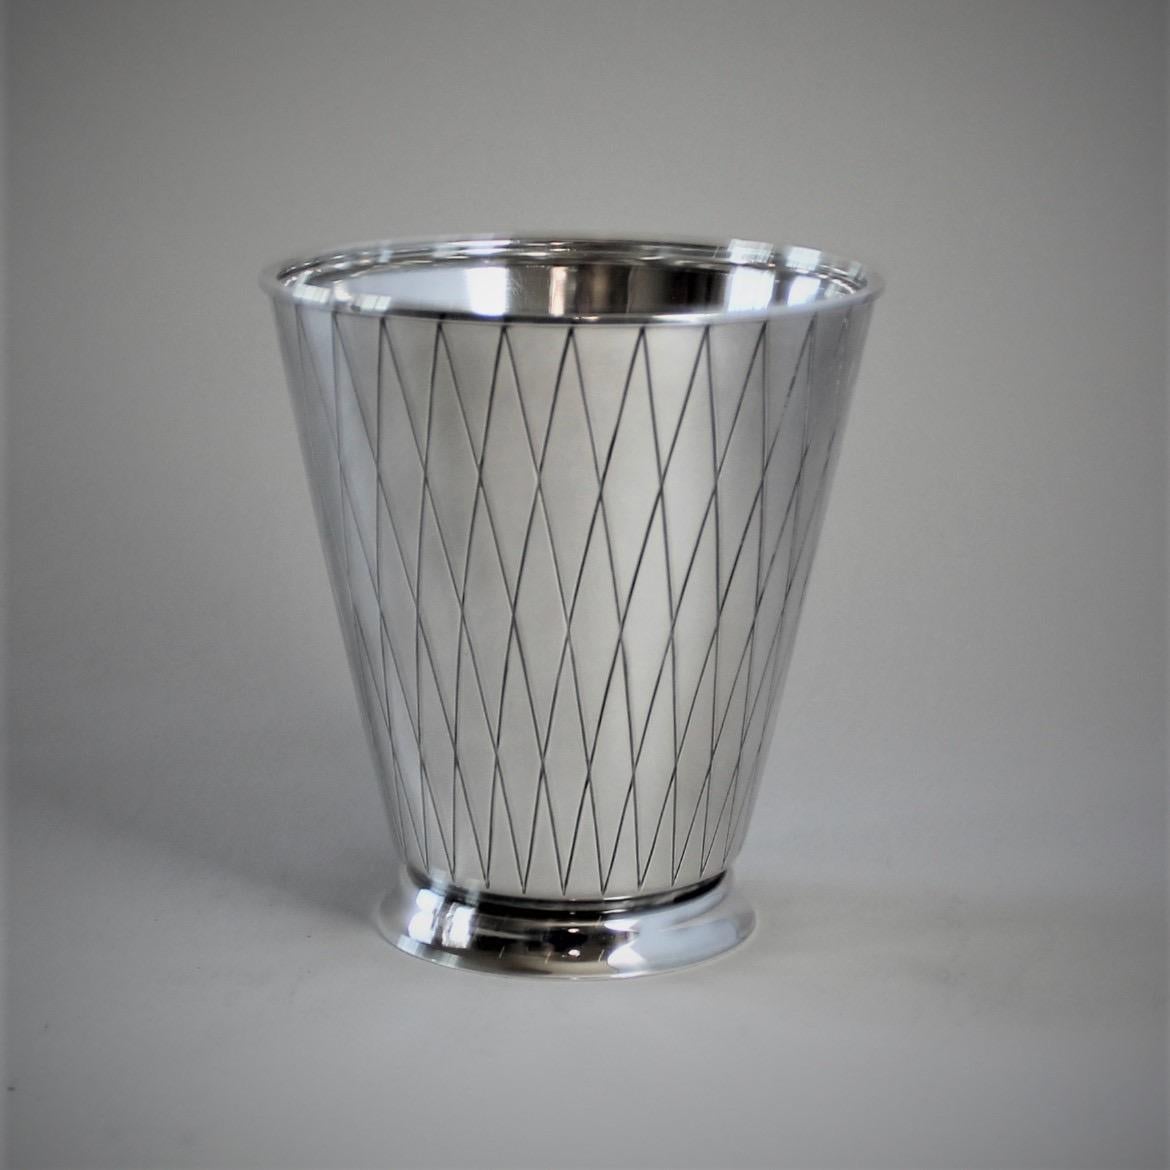 Danish Georg Jensen Sterling Silver Ice Bucket, No. 819 by Sigvard Bernadotte